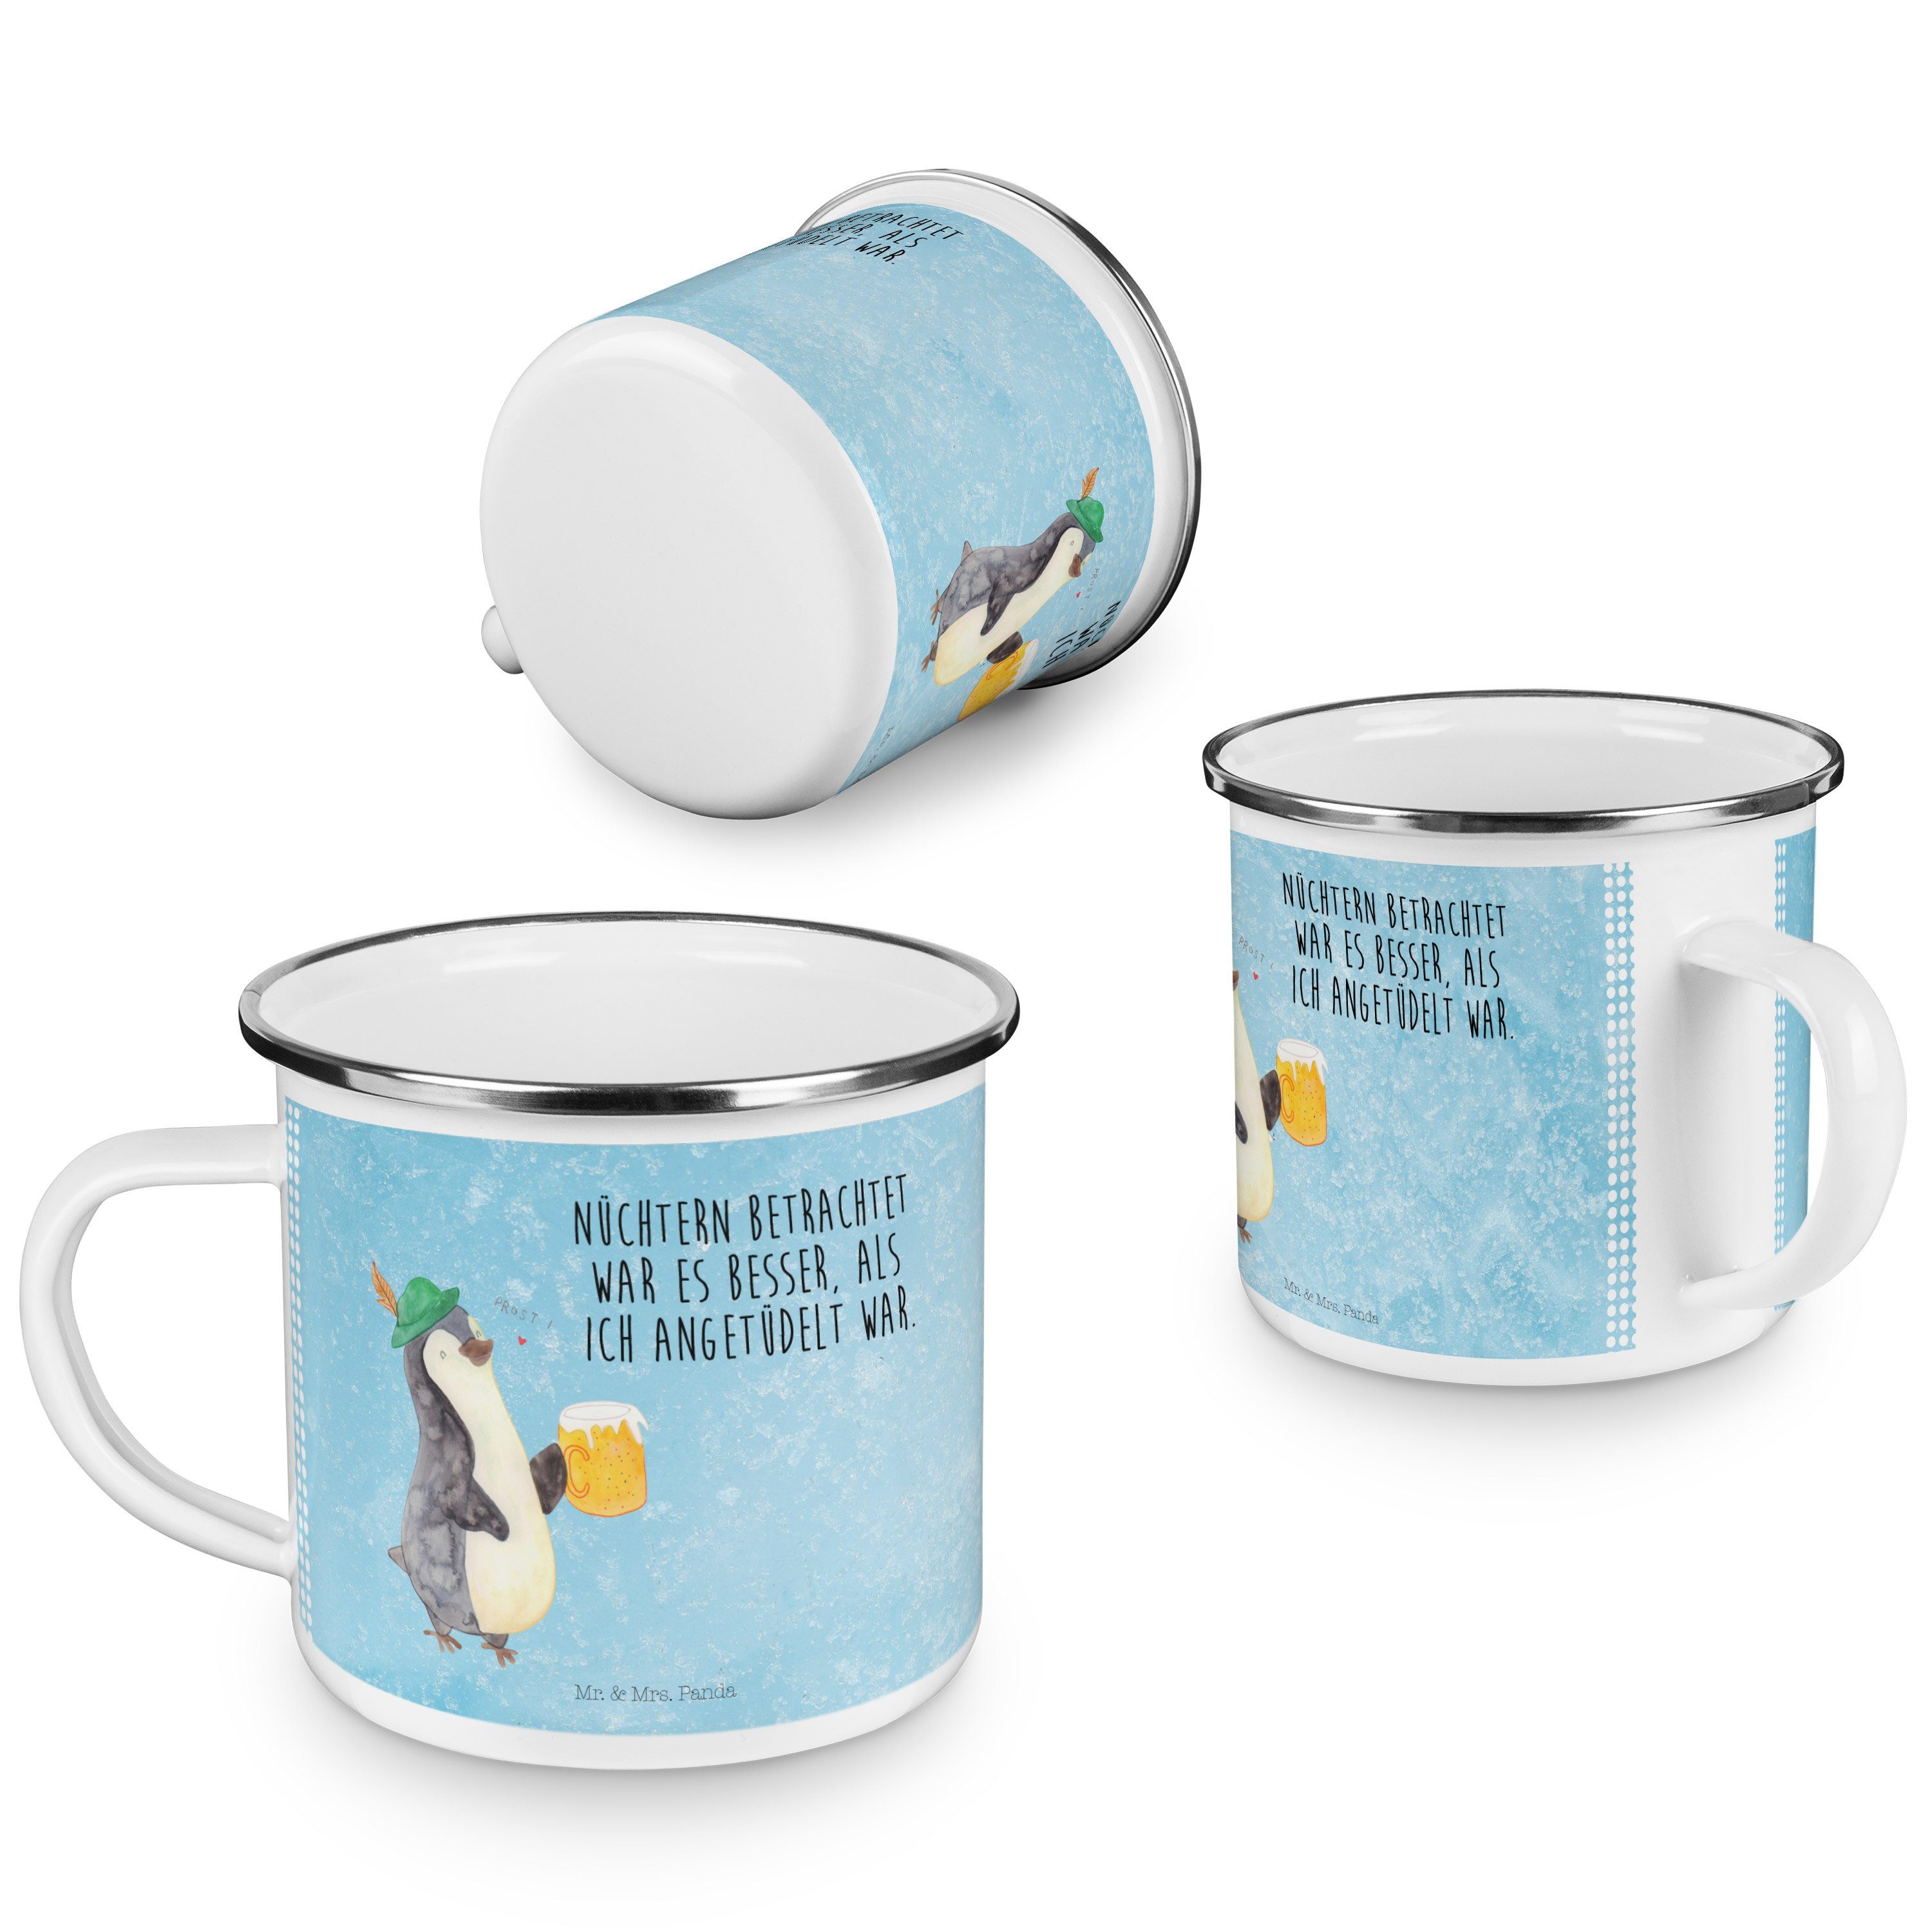 Blecht, Becher Kaffee Mrs. Eisblau Bier Emaille - & Mr. Pinguin Panda - Emaille Geschenk, Trinkbecher,